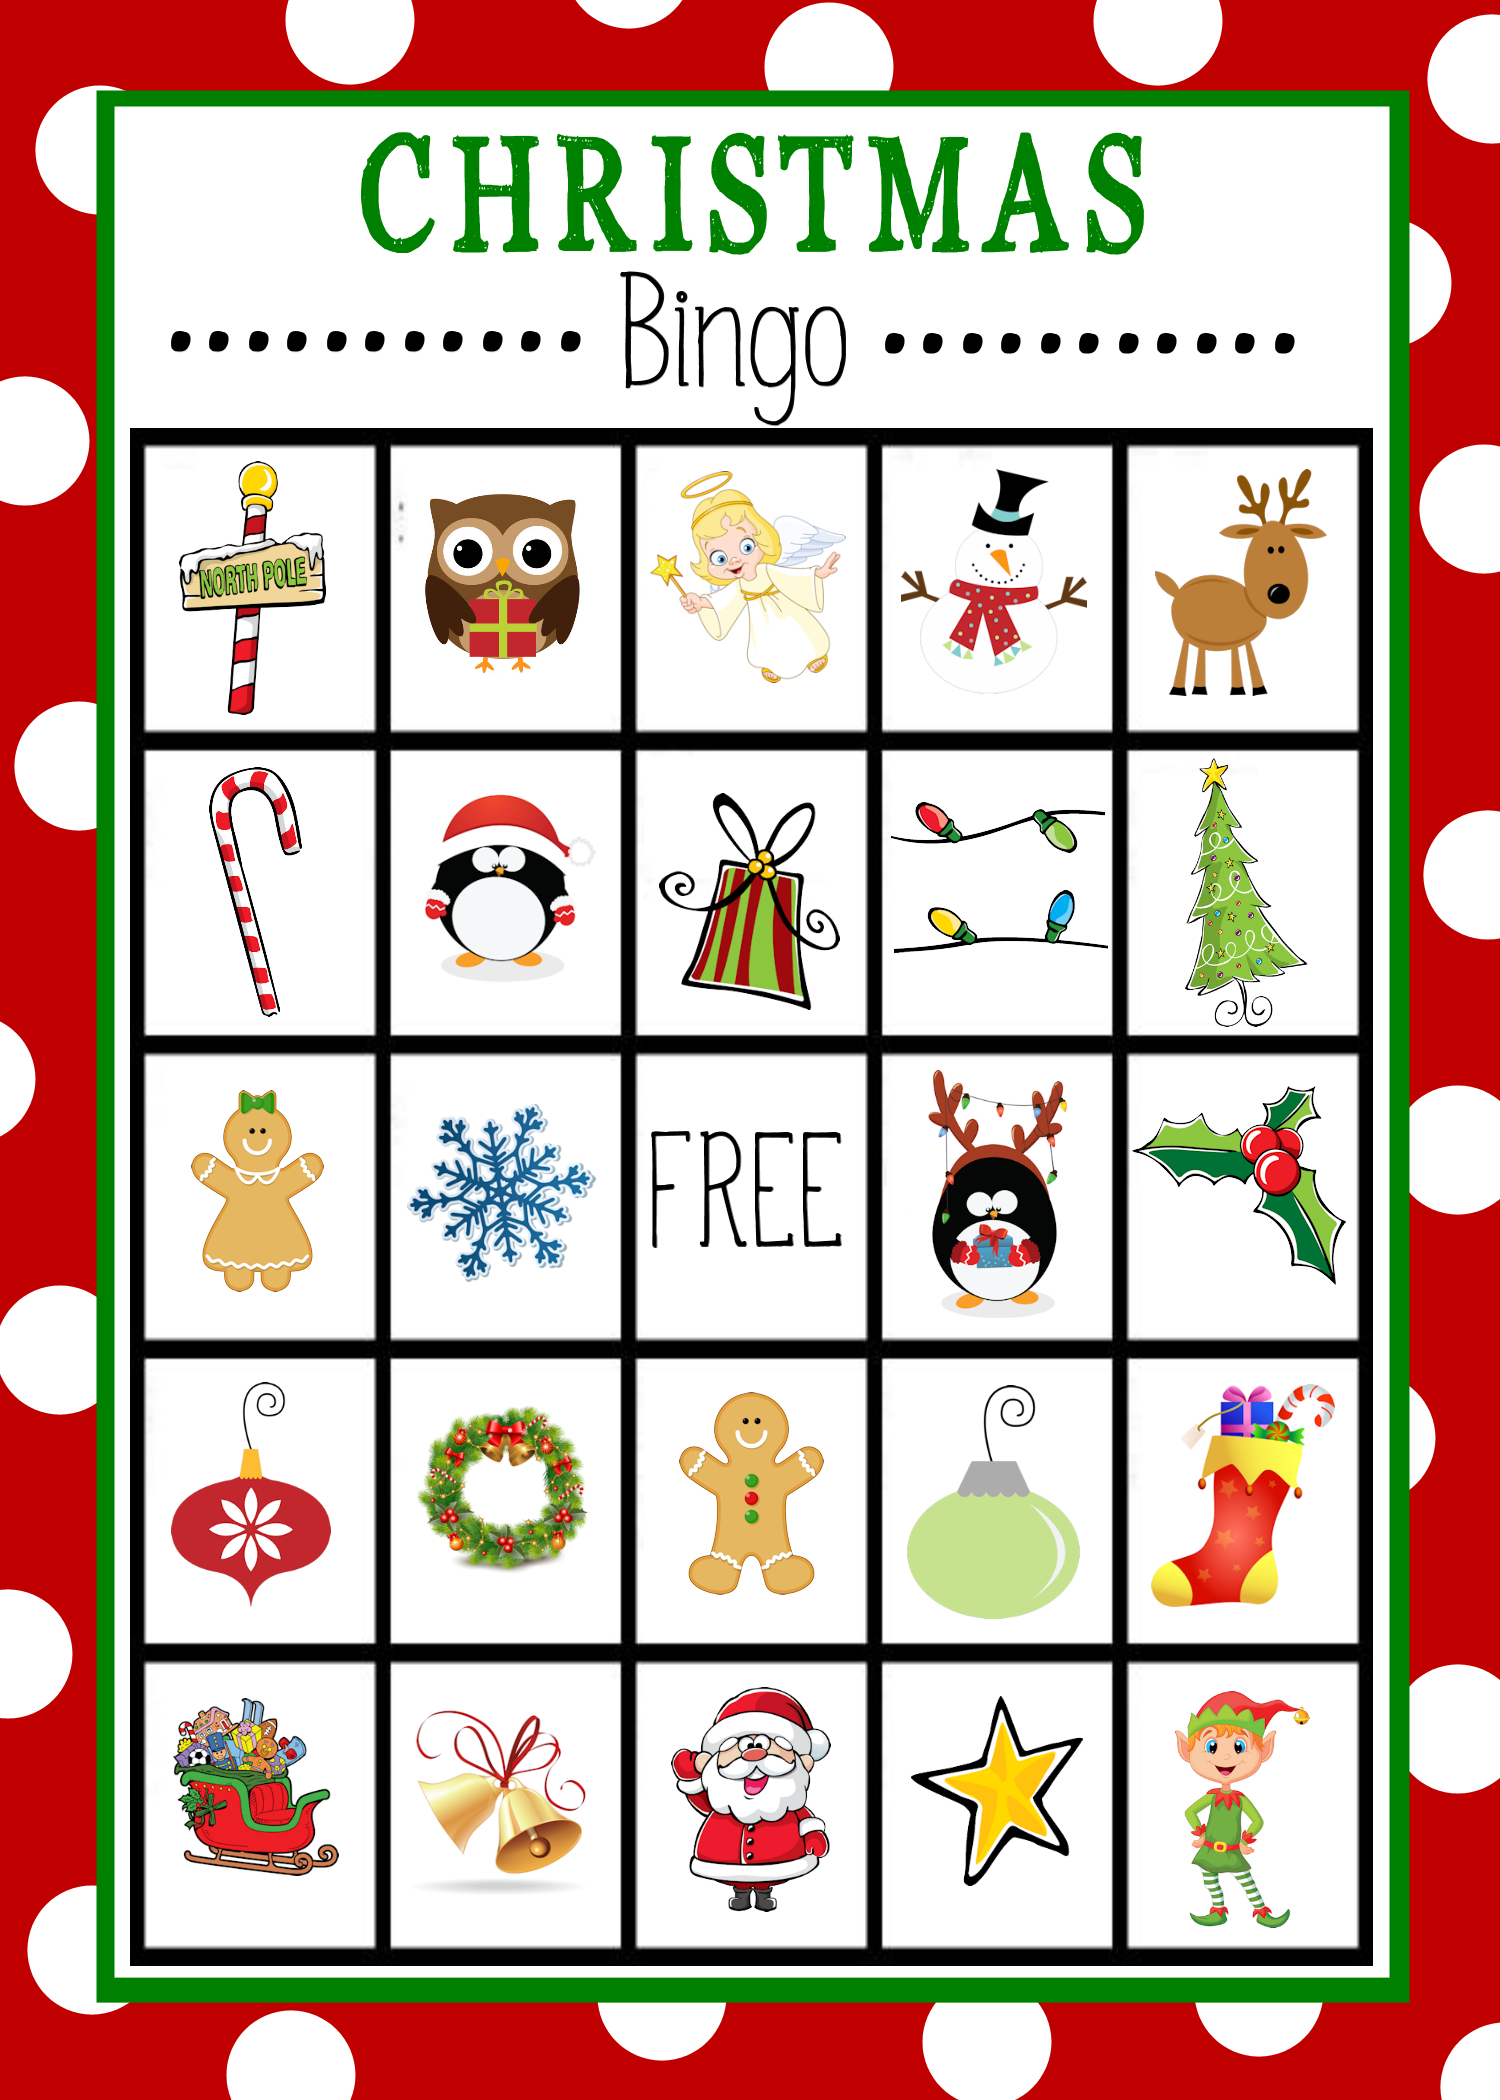 Free Printable Christmas Bingo Game | Christmas | Pinterest - Free Printable Christmas Bingo Cards